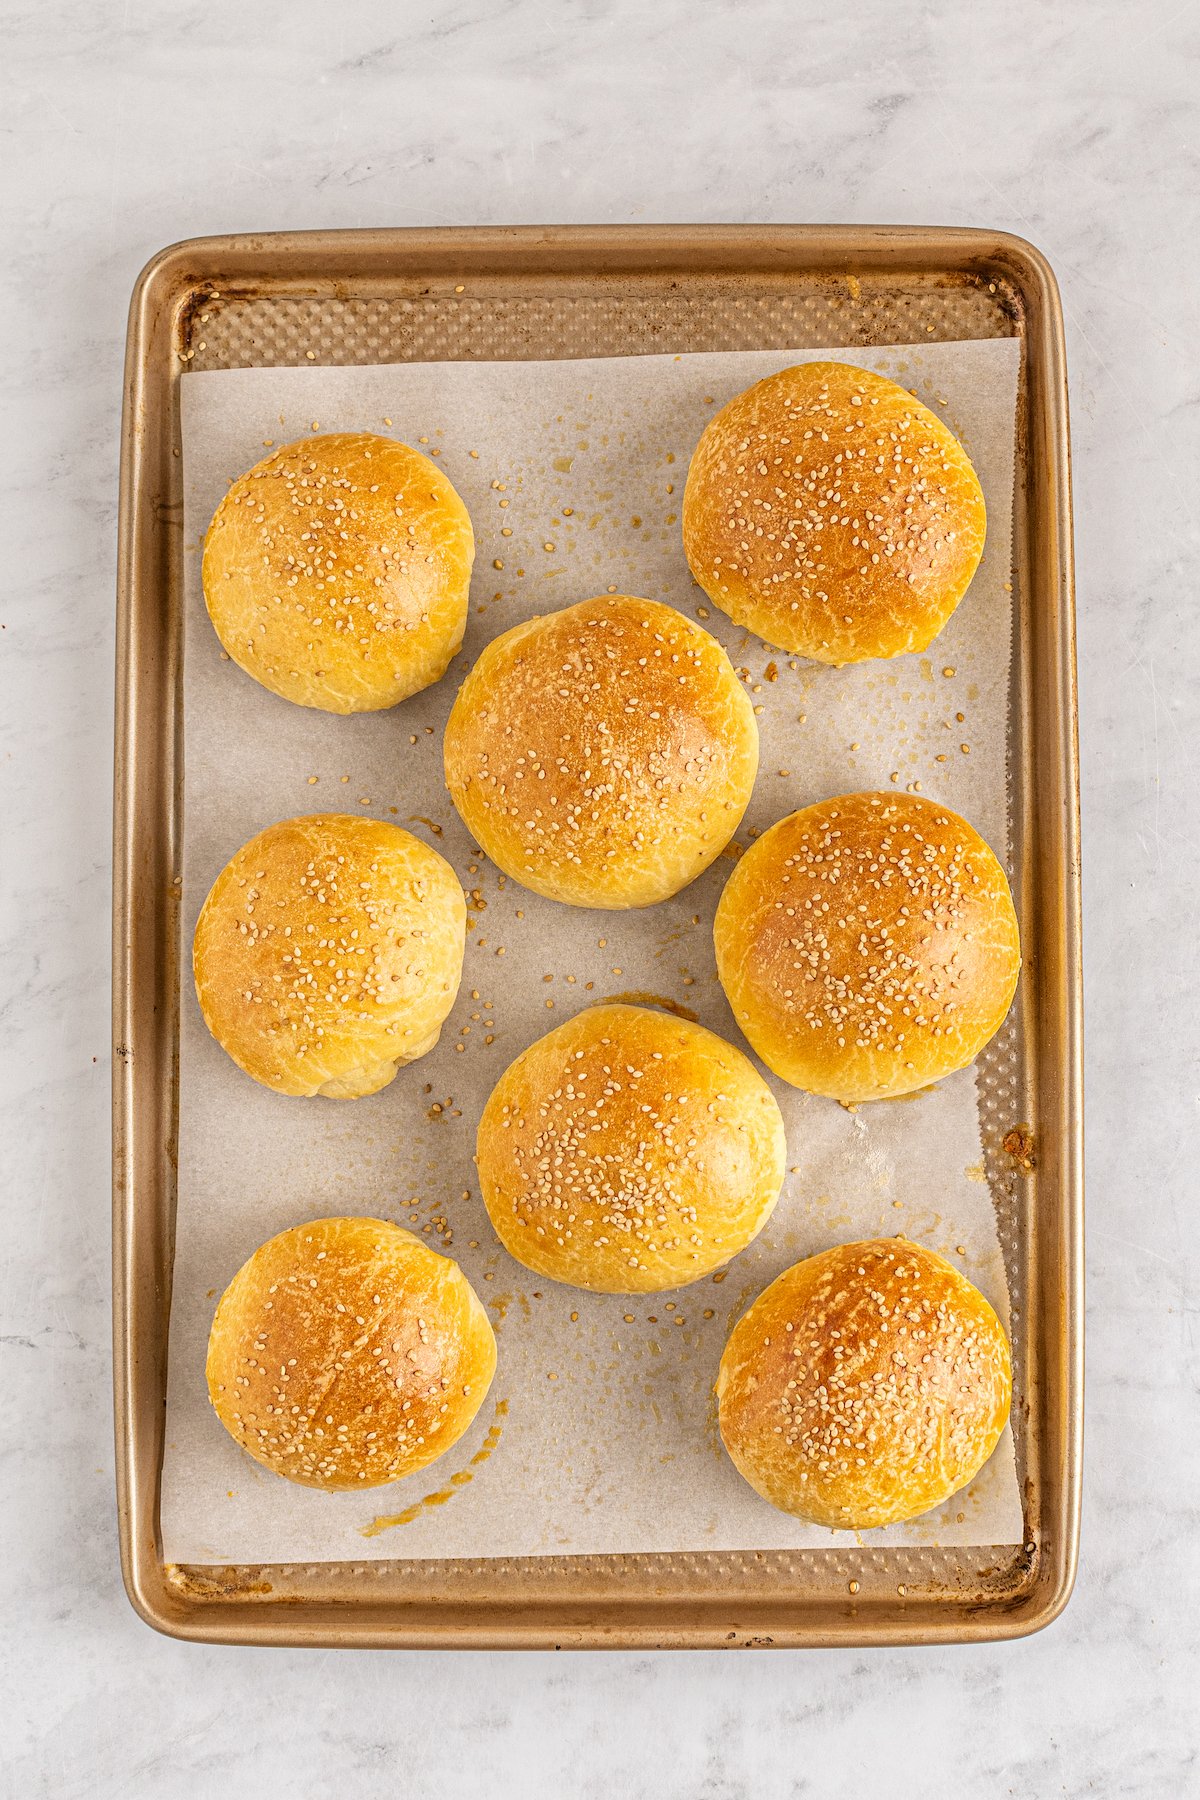 Baked brioche buns on a baking sheet.